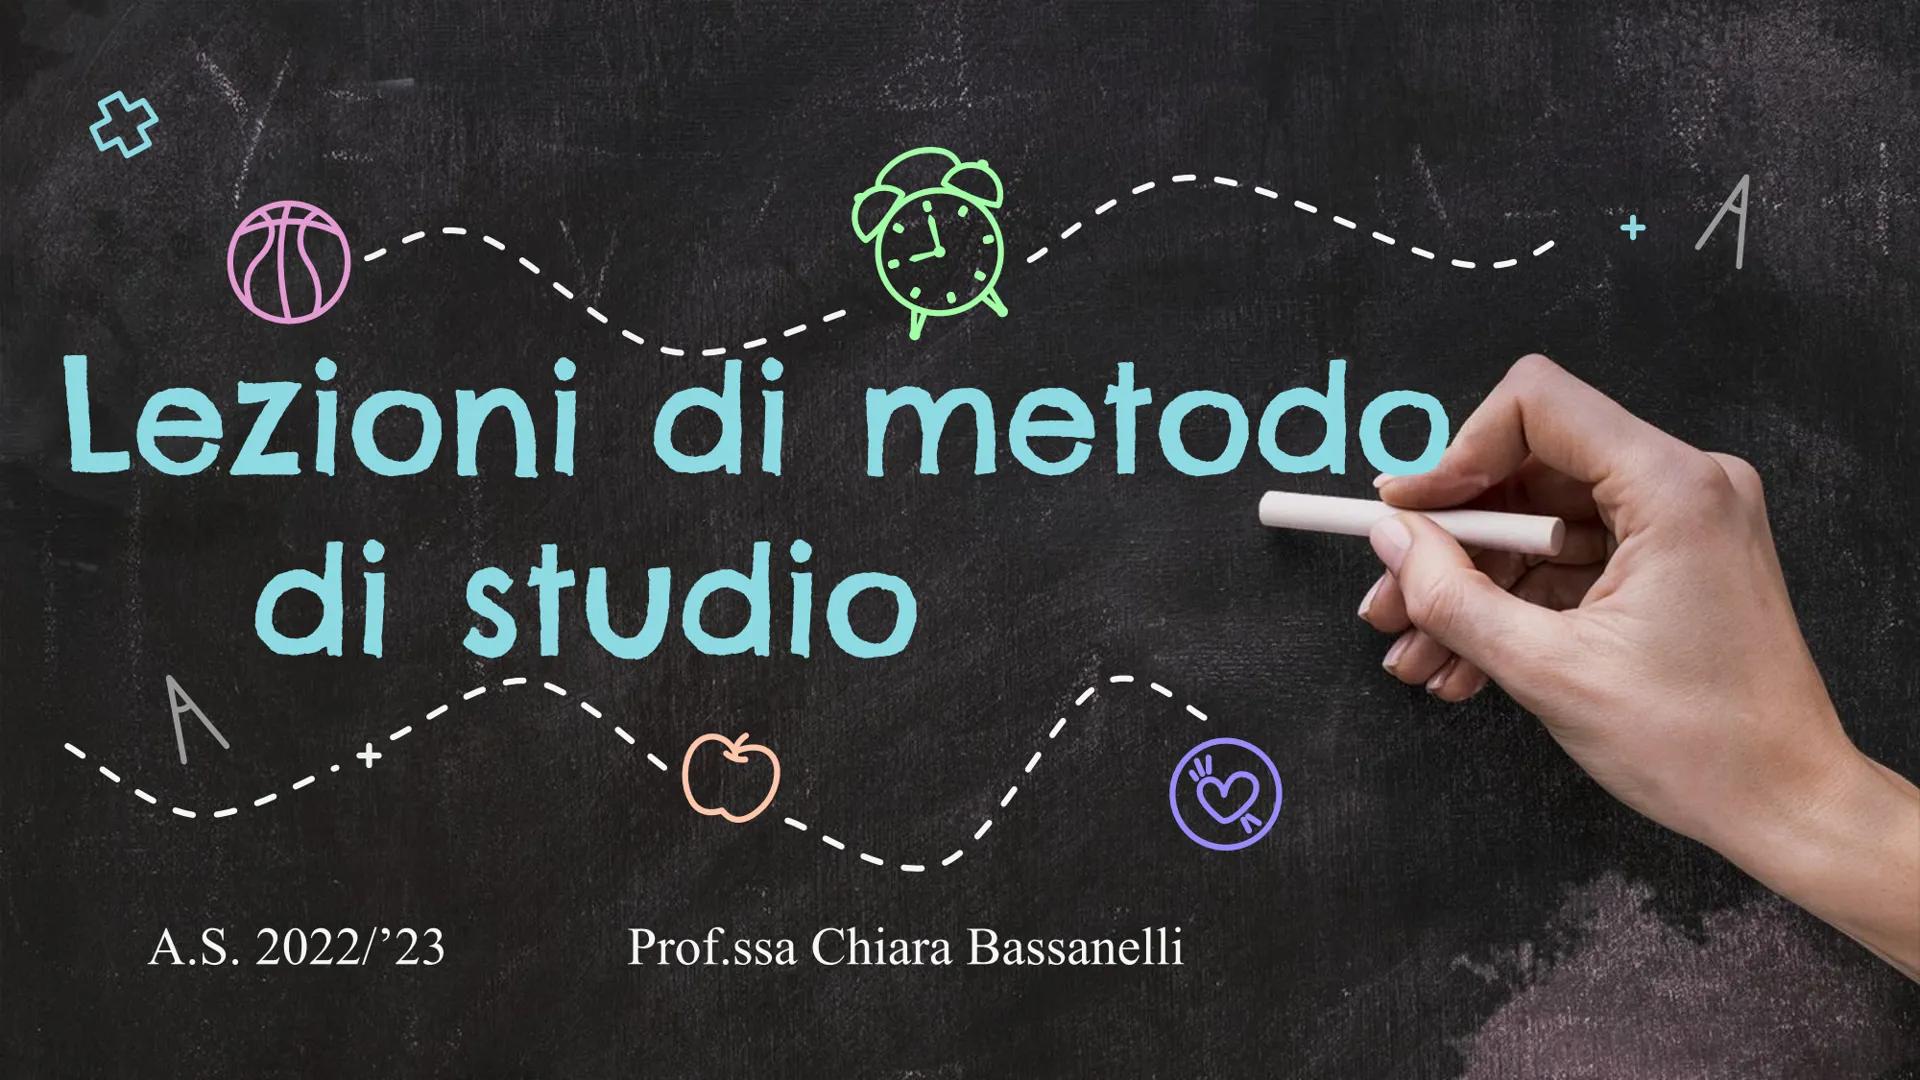 ☆
26
Lezioni di metodo
di studio
A.S. 2022/23
Prof.ssa Chiara Bassanelli
A
** Cos'è il metodo di studio?
È la strada per organizzare in
modo